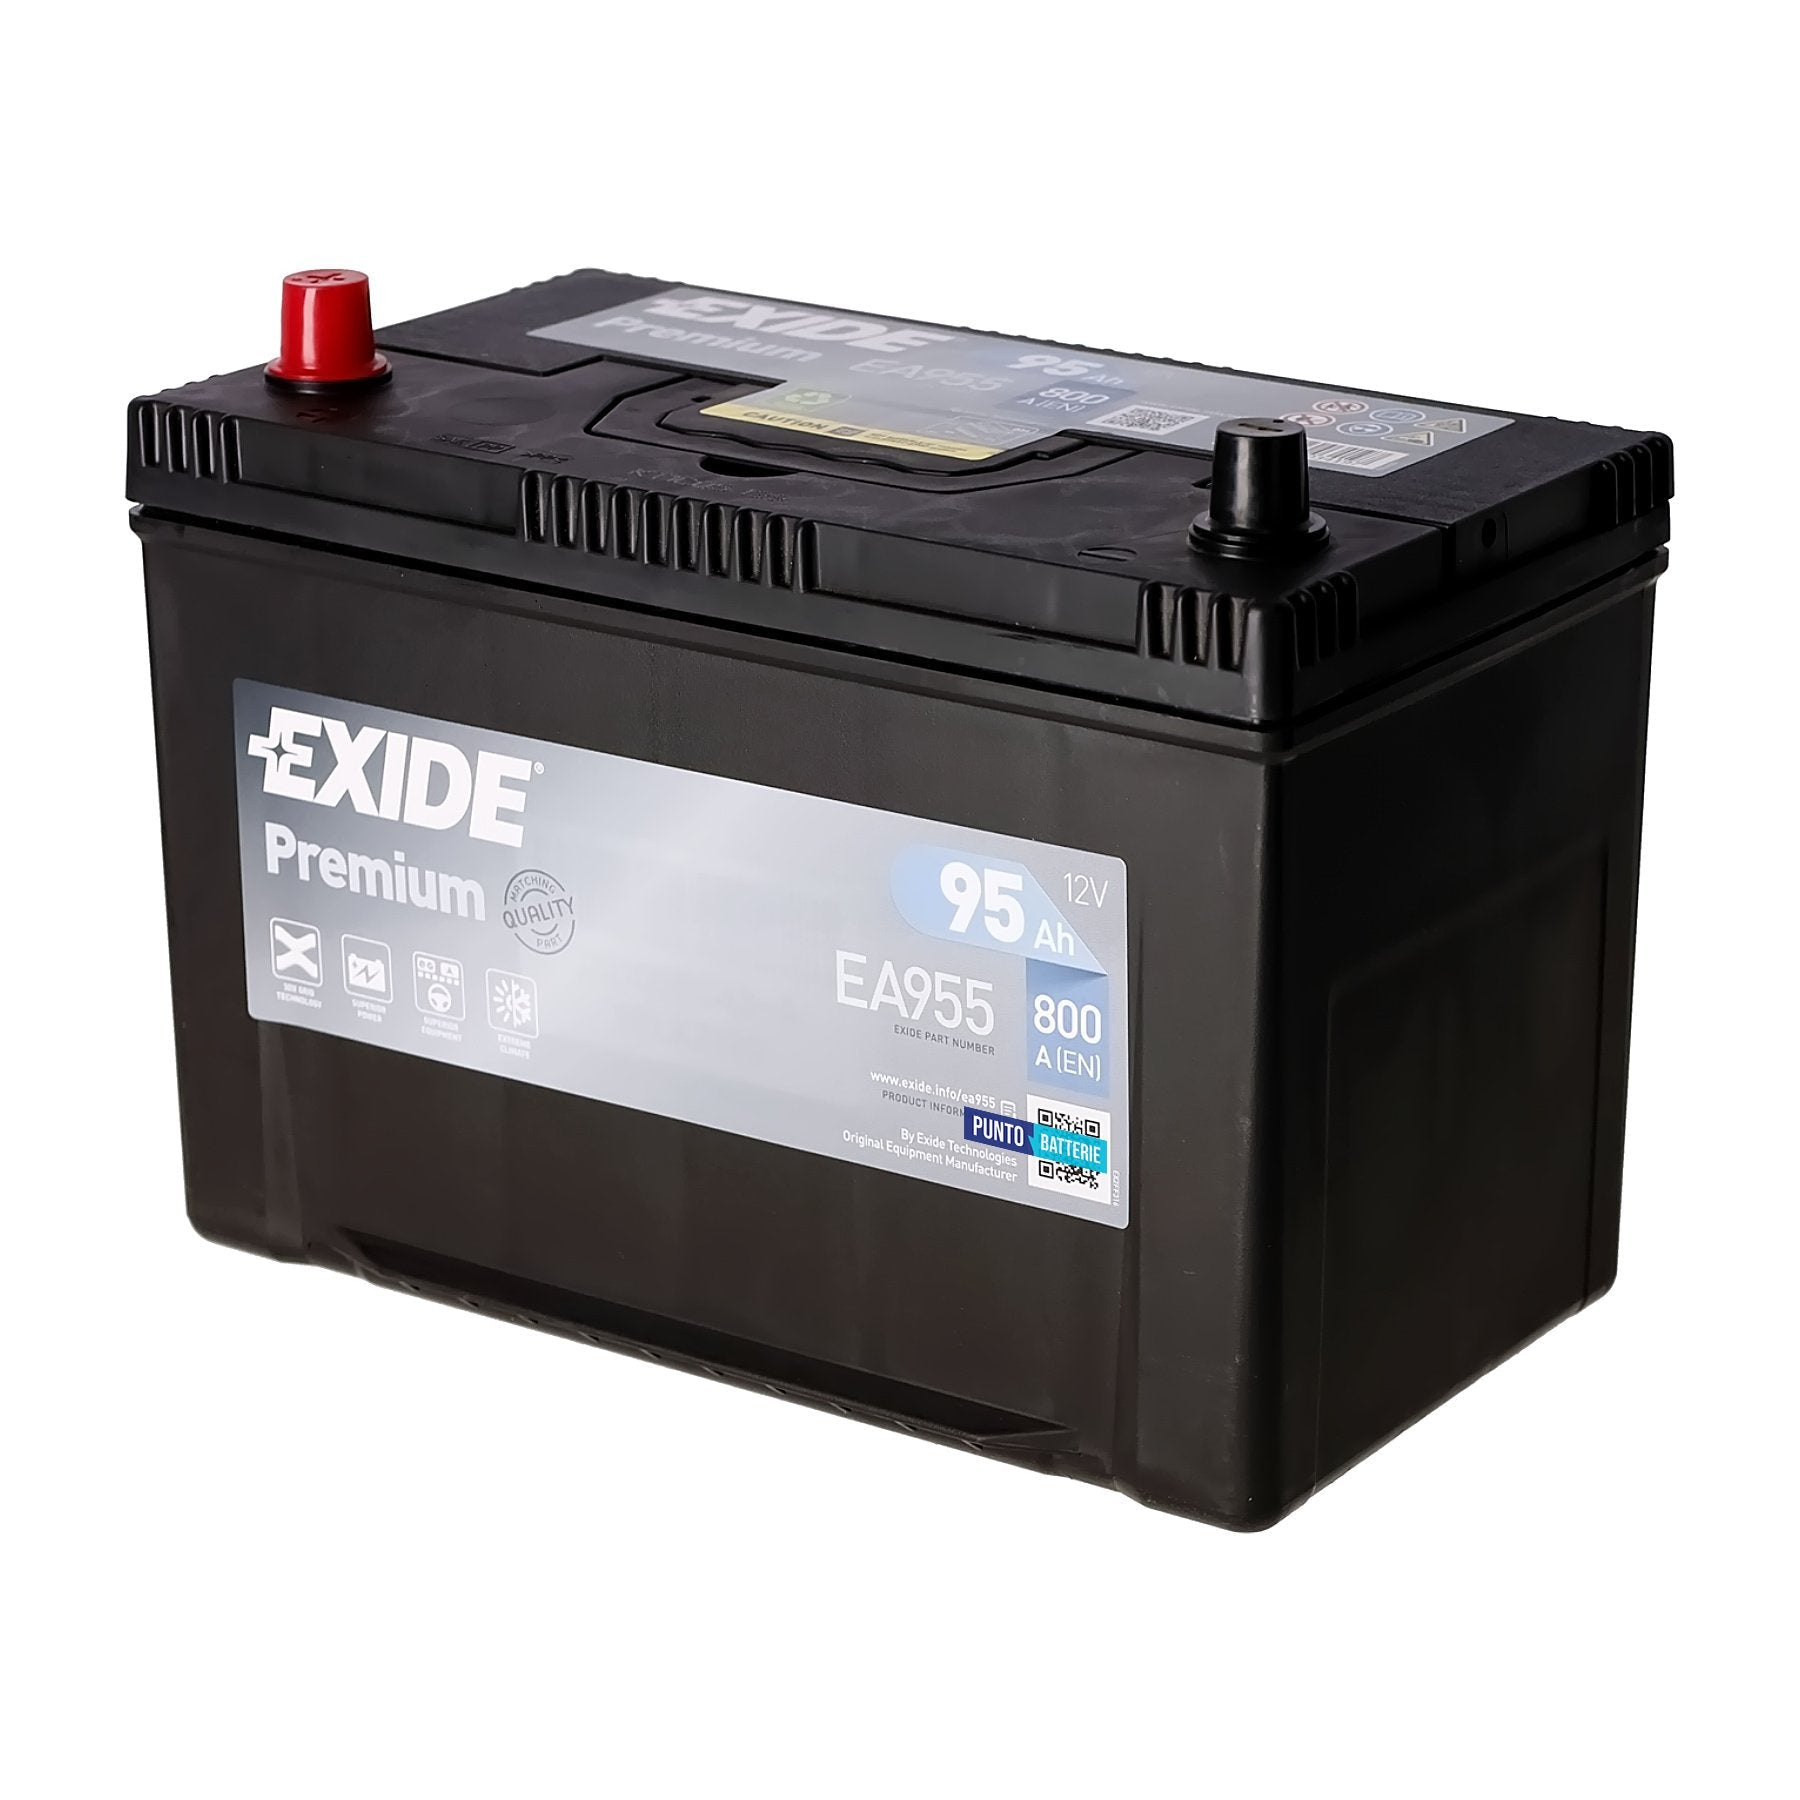 Batteria originale Exide Premium EA955, dimensioni 306 x 173 x 222, polo positivo a sinistra, 12 volt, 95 amperora, 800 ampere. Batteria per auto e veicoli leggeri.